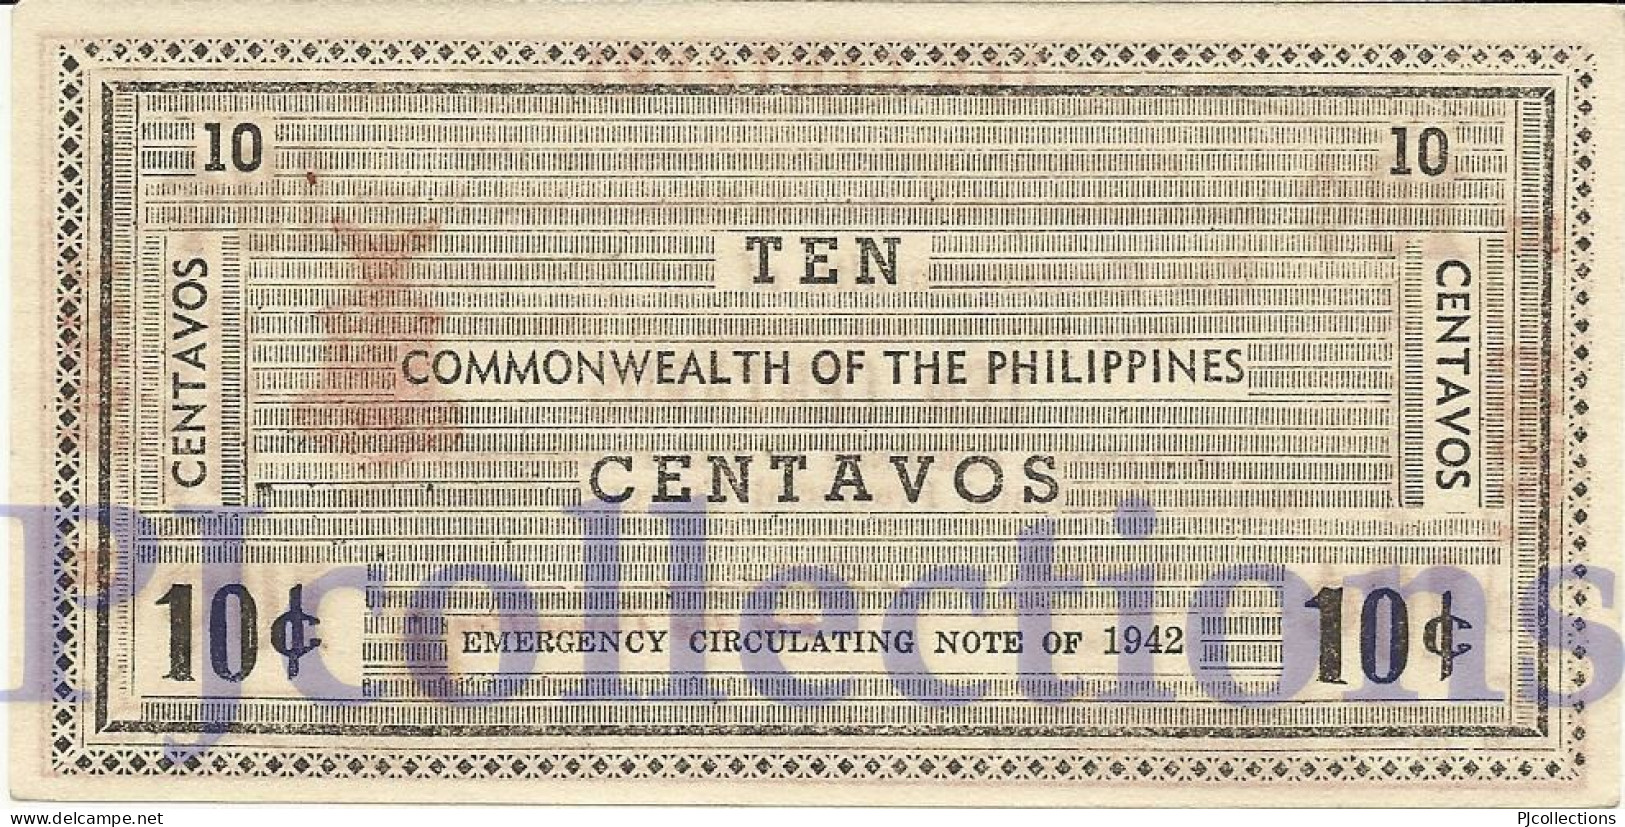 PHILIPPINES 10 CENTAVOS 1942 PICK S643a AUNC EMERGENCY NOTE - Filippine